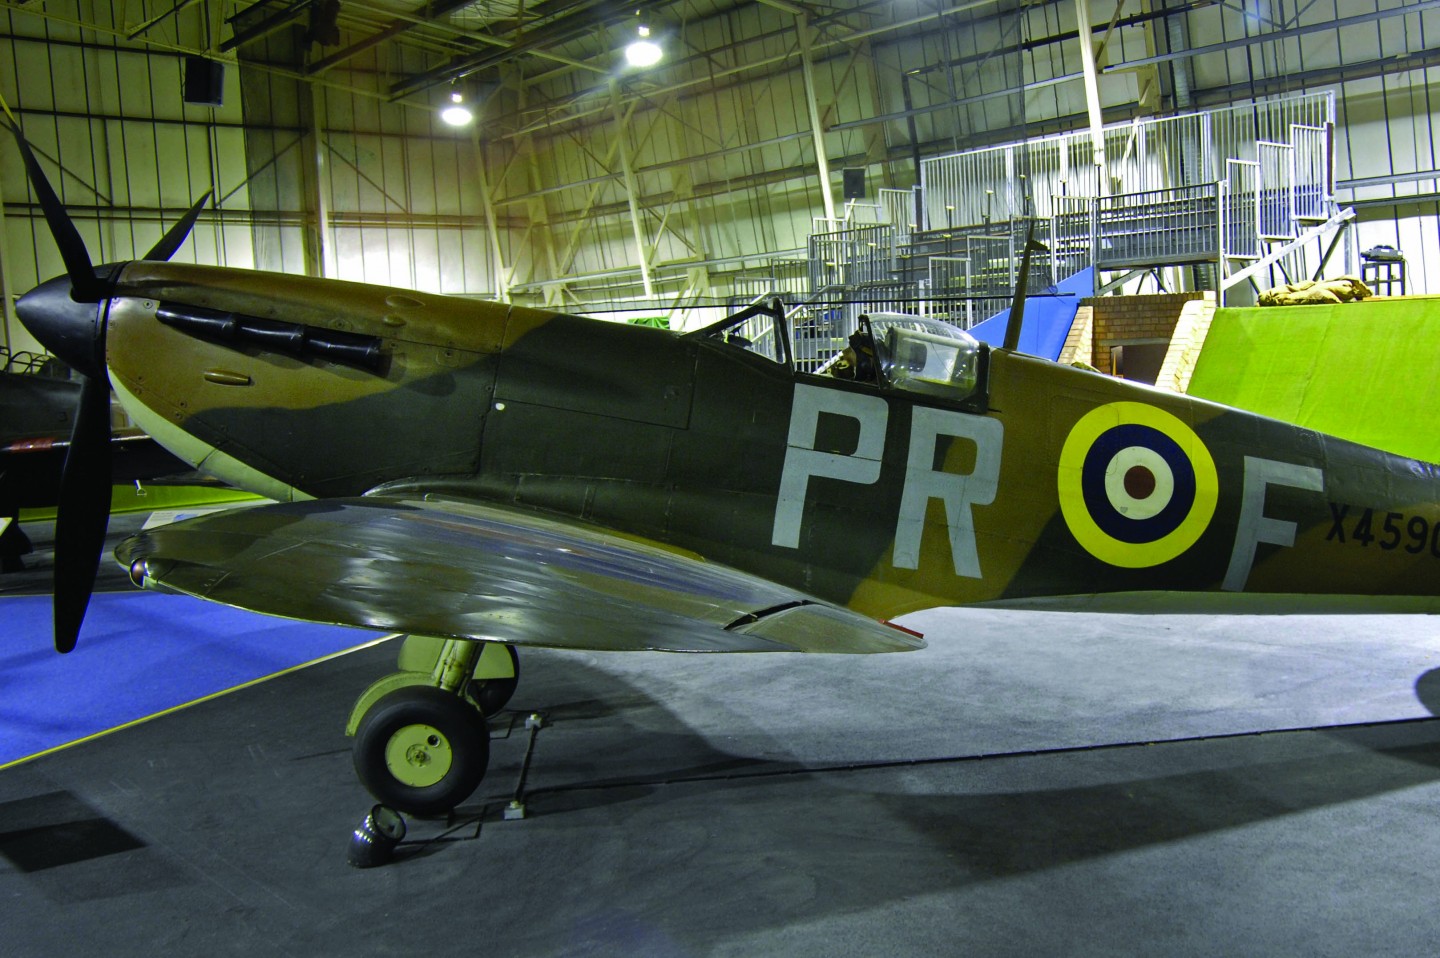 Battle of Britain RAF Museum